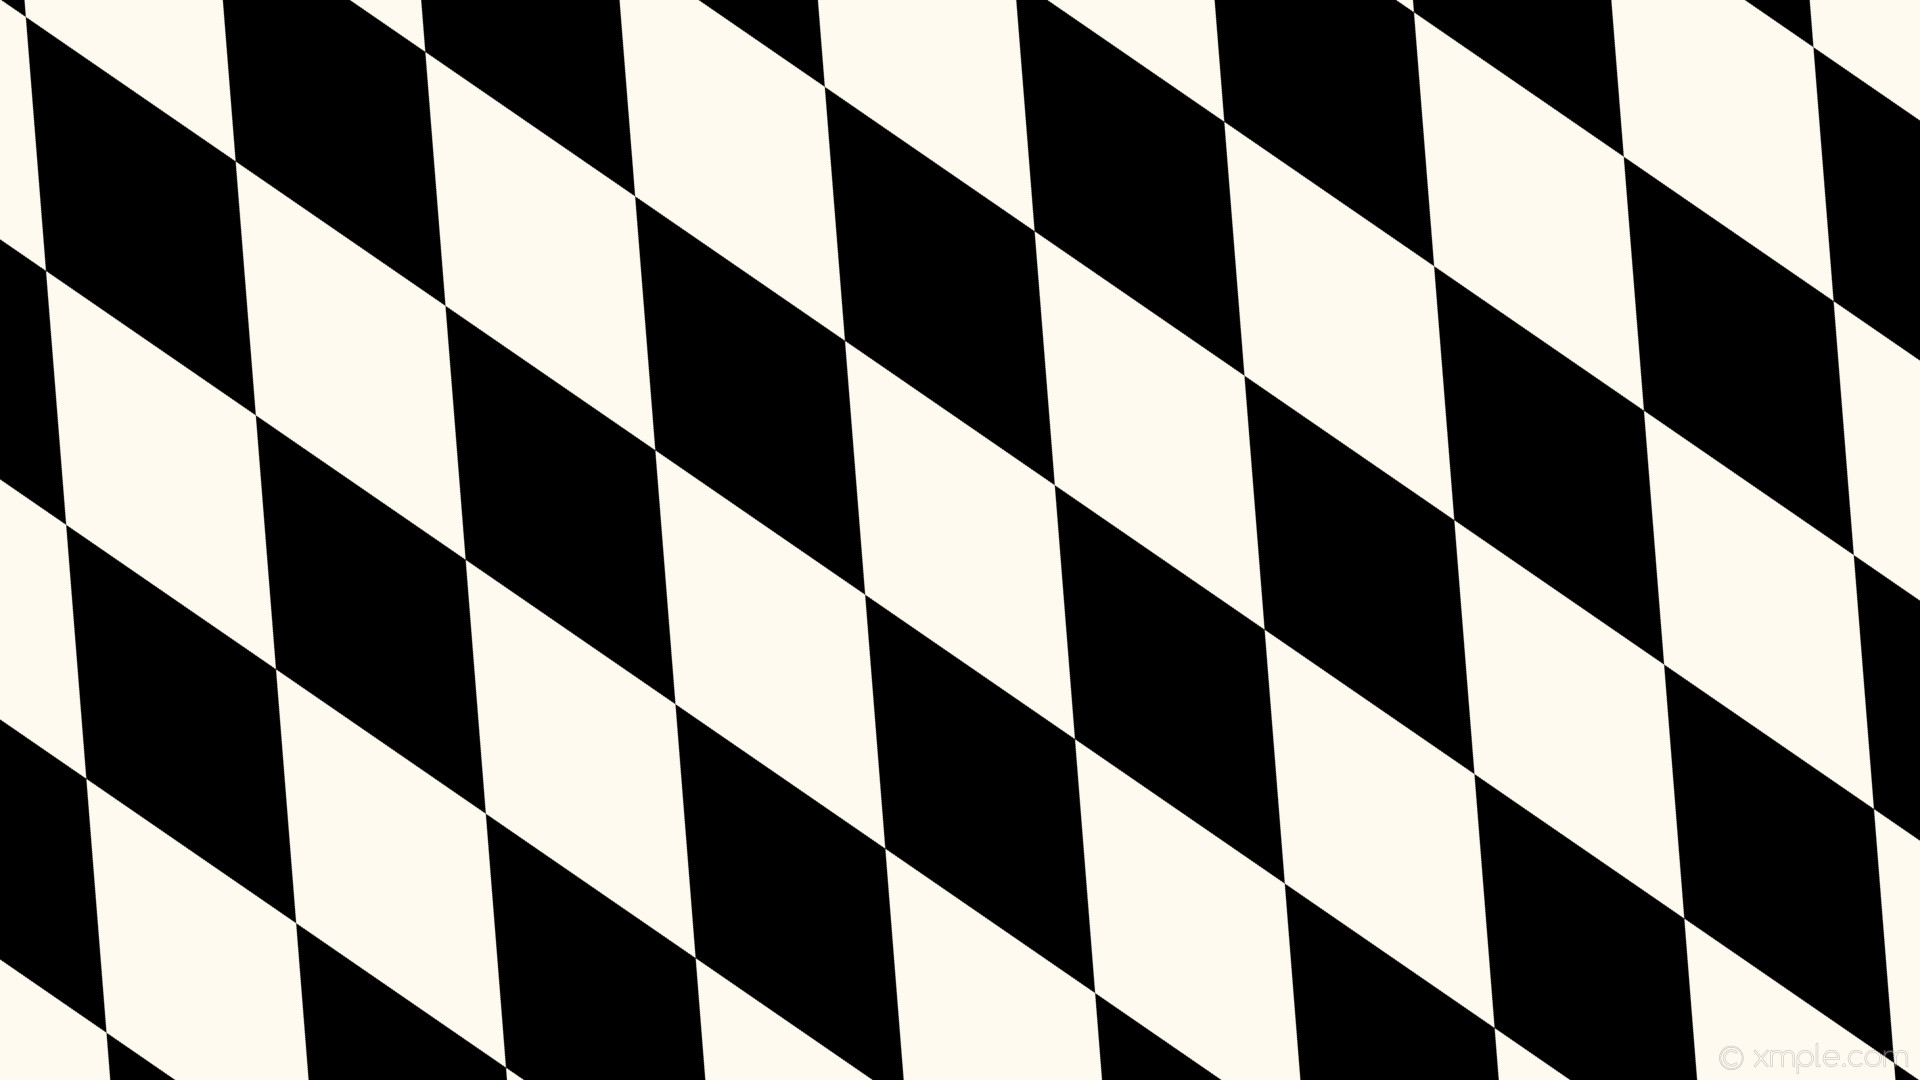 1920x1080 wallpaper lozenge black diamond white rhombus floral white #fffaf0 #000000  120Â° 460px 219px